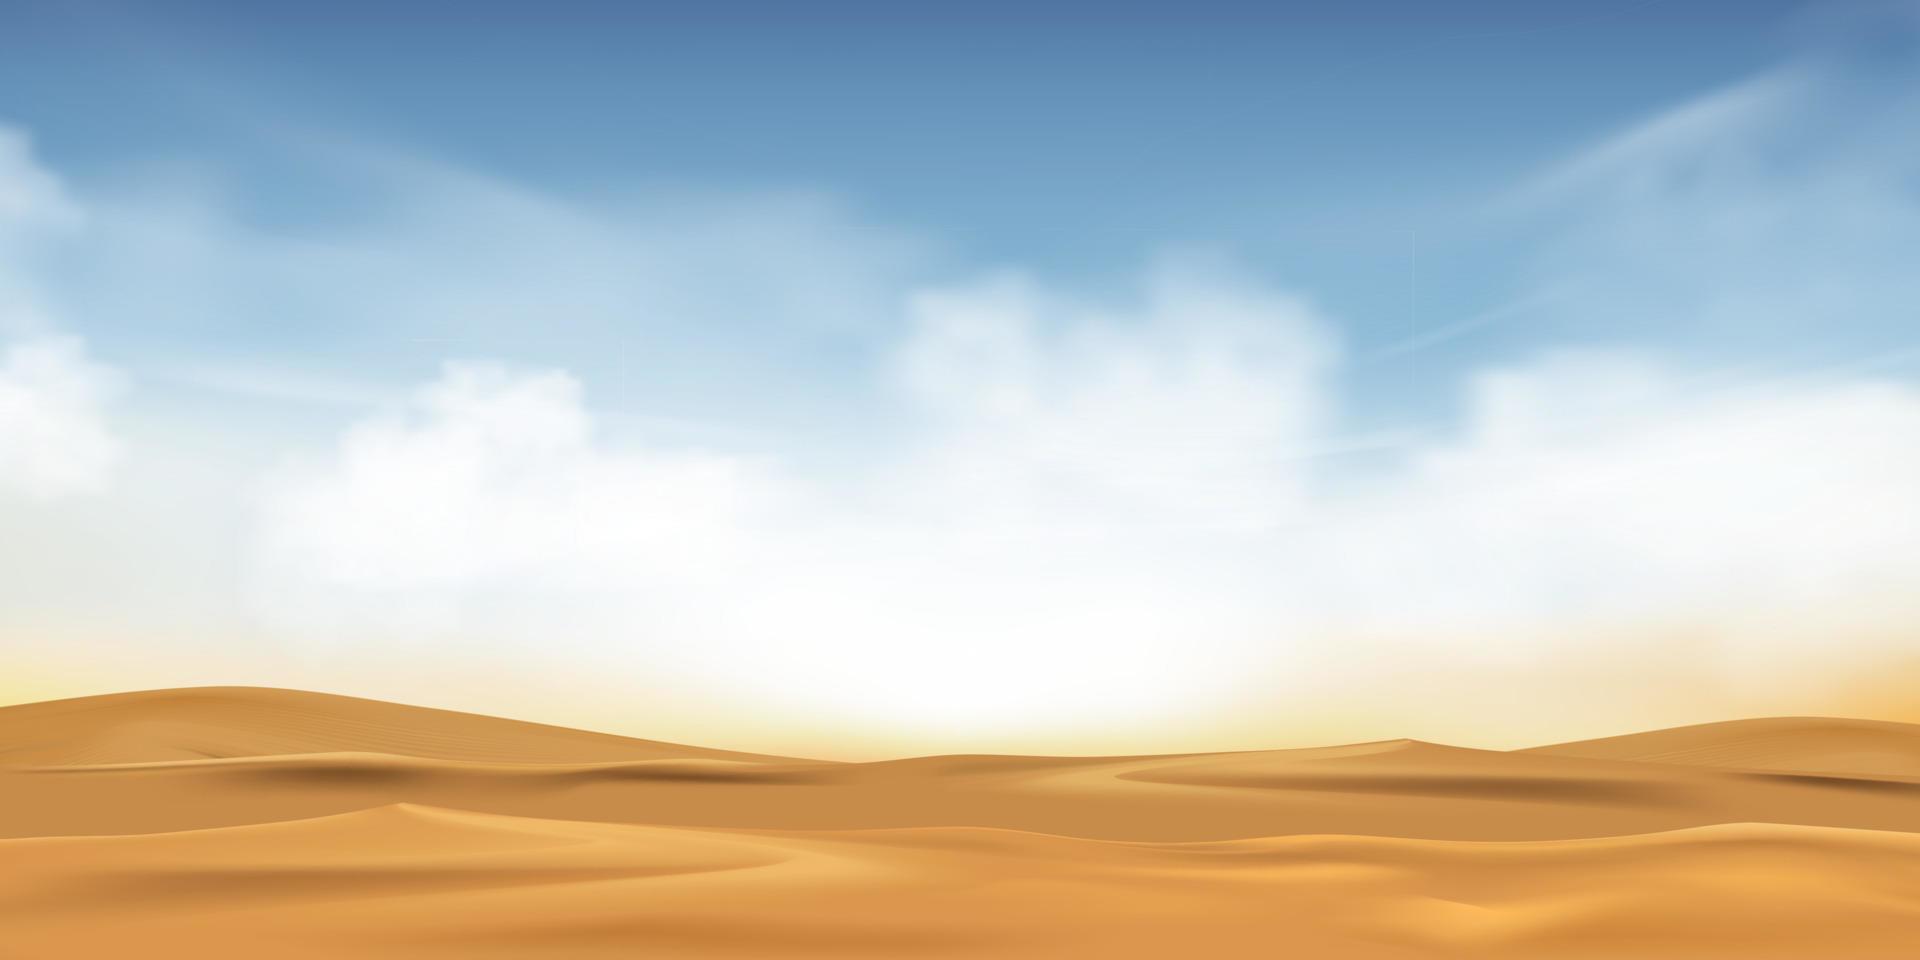 blauer himmel mit flauschigen wolken und strandsand an heißen sonnigen tag sommer oder frühling, vektorillustration panoramische minimale karikatur schöne natur wüstenlandschaft sanddünen mit sonnenlicht am morgen vektor